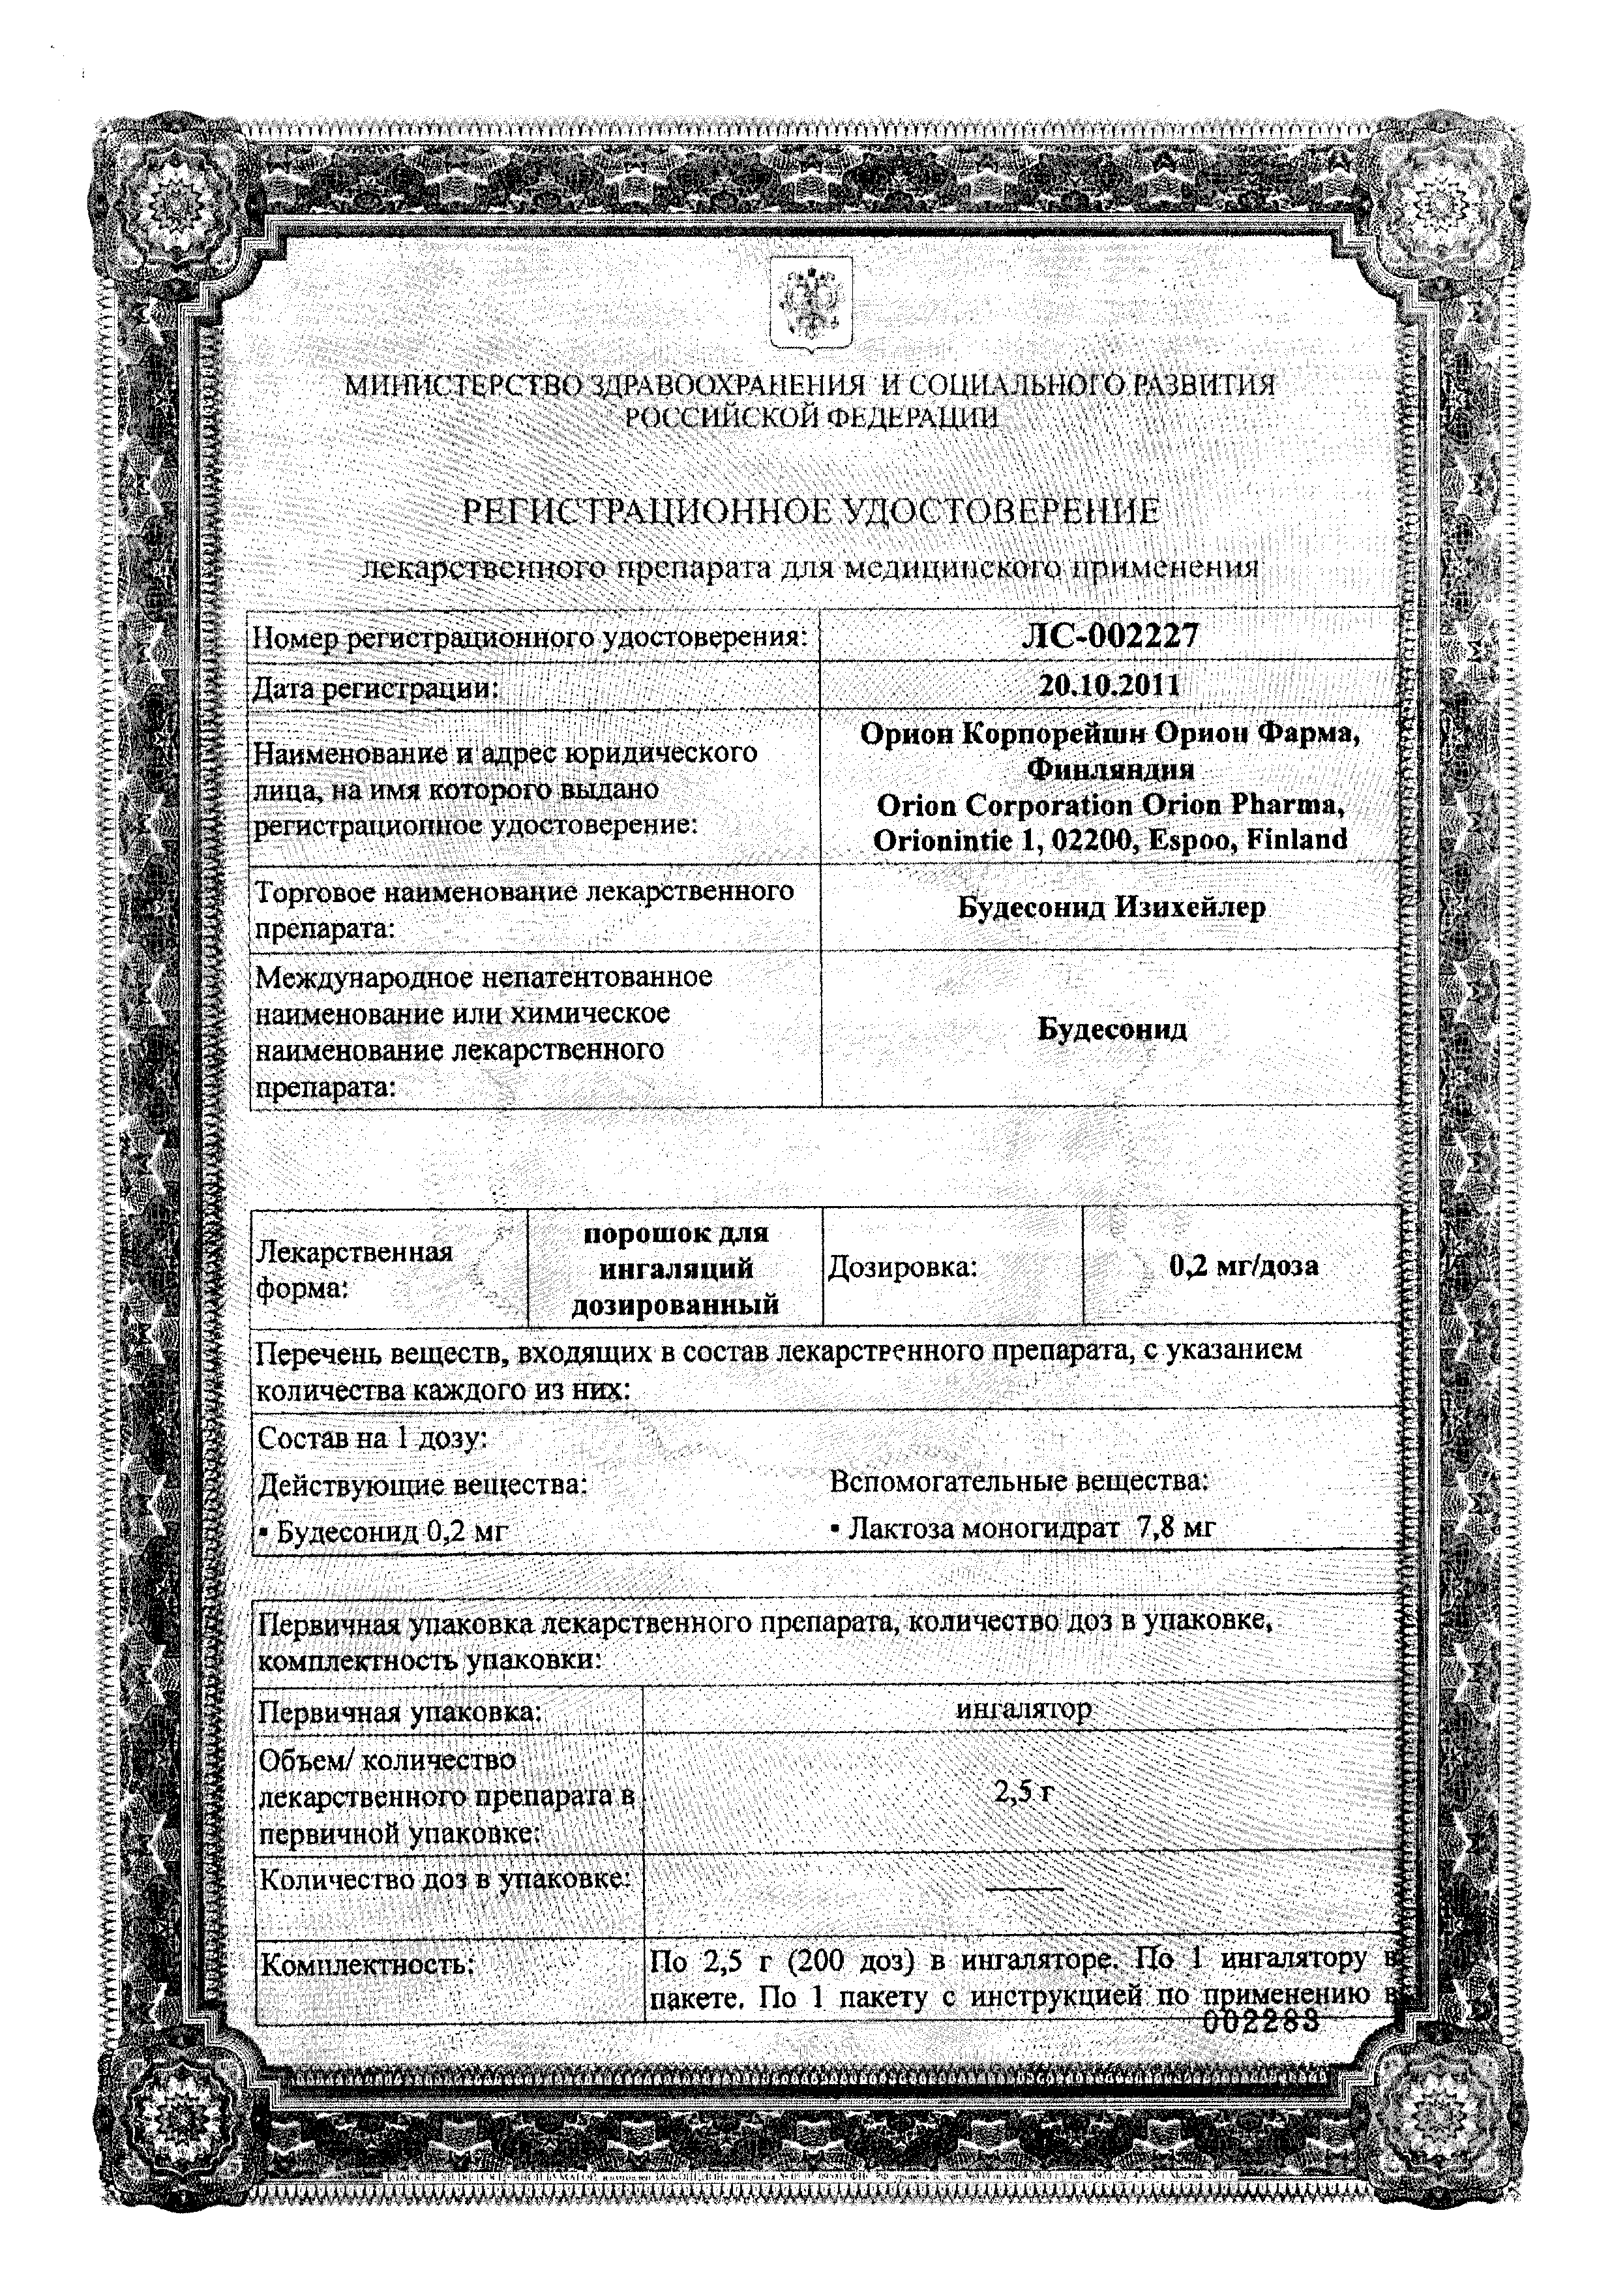 Будесонид Изихейлер сертификат